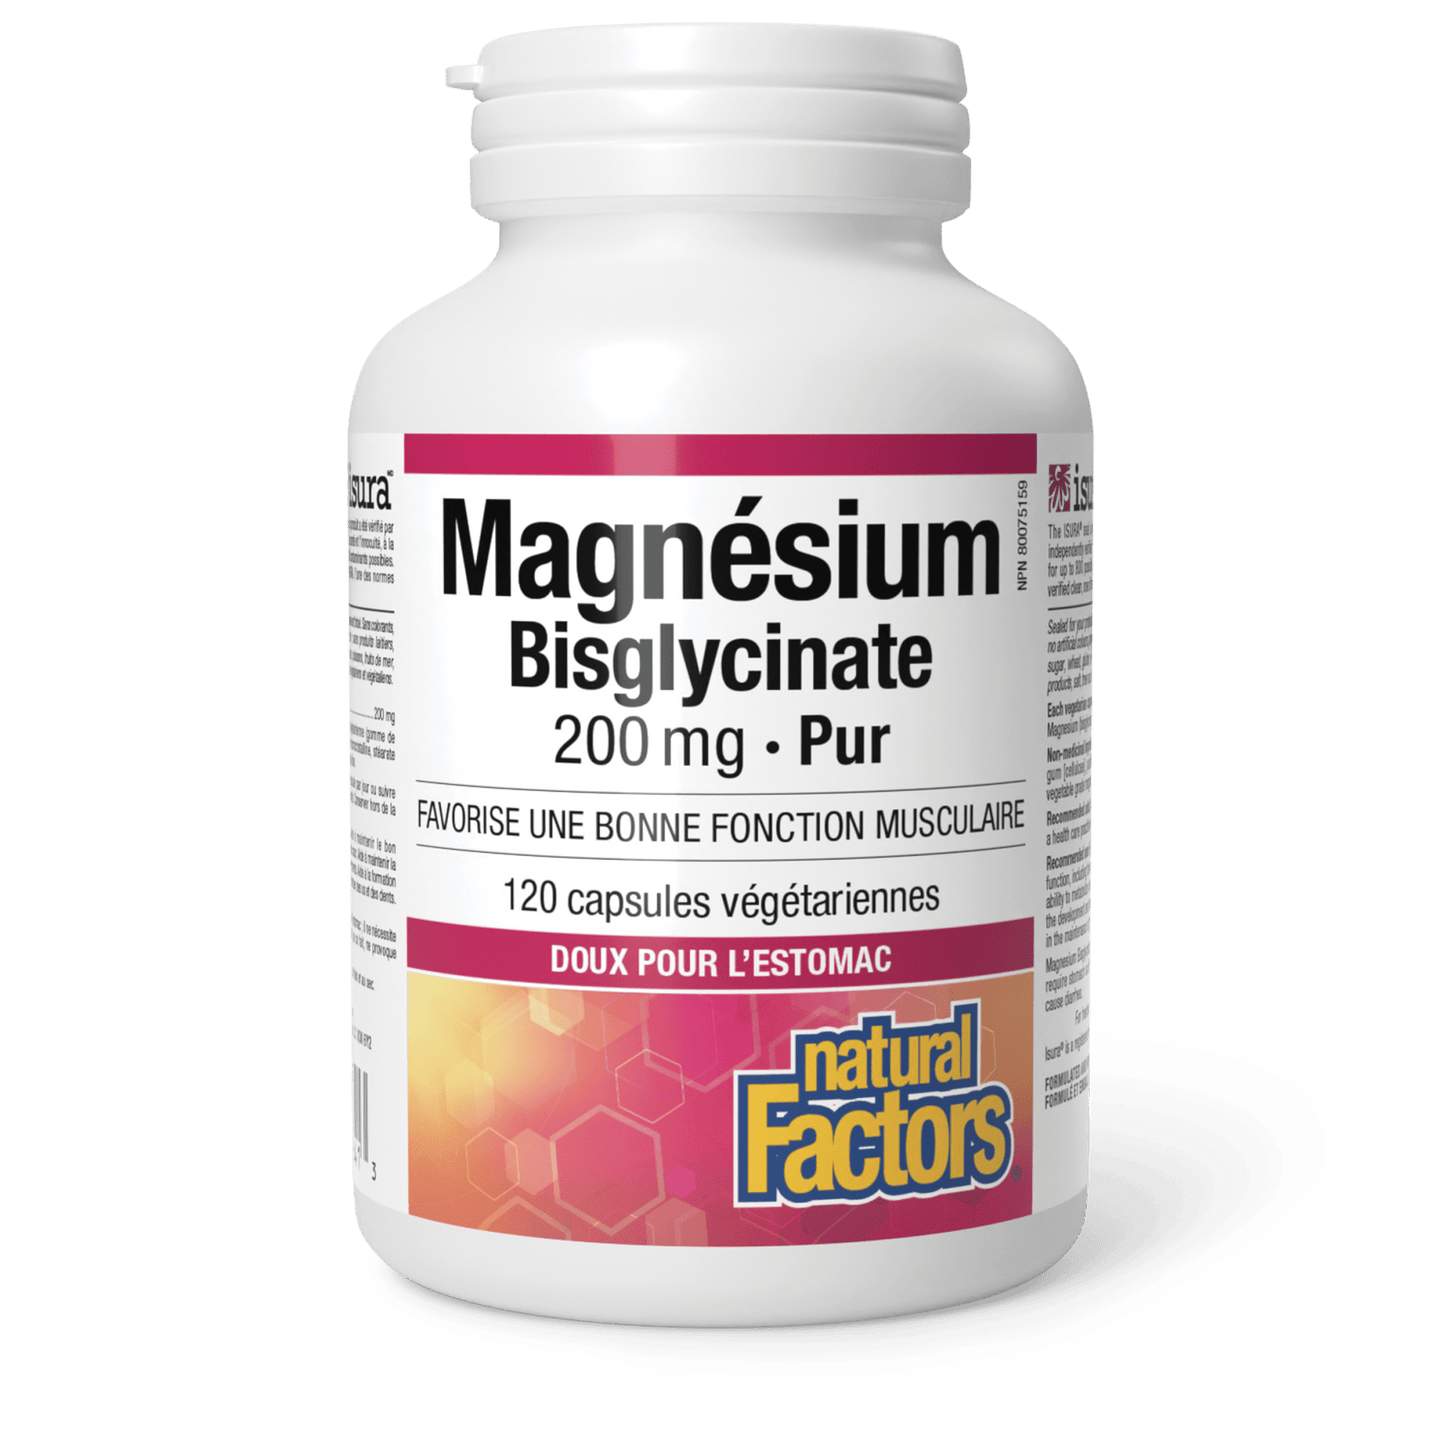 Magnésium Bisclycinate Pur 200 mg, Natural Factors|v|image|1641